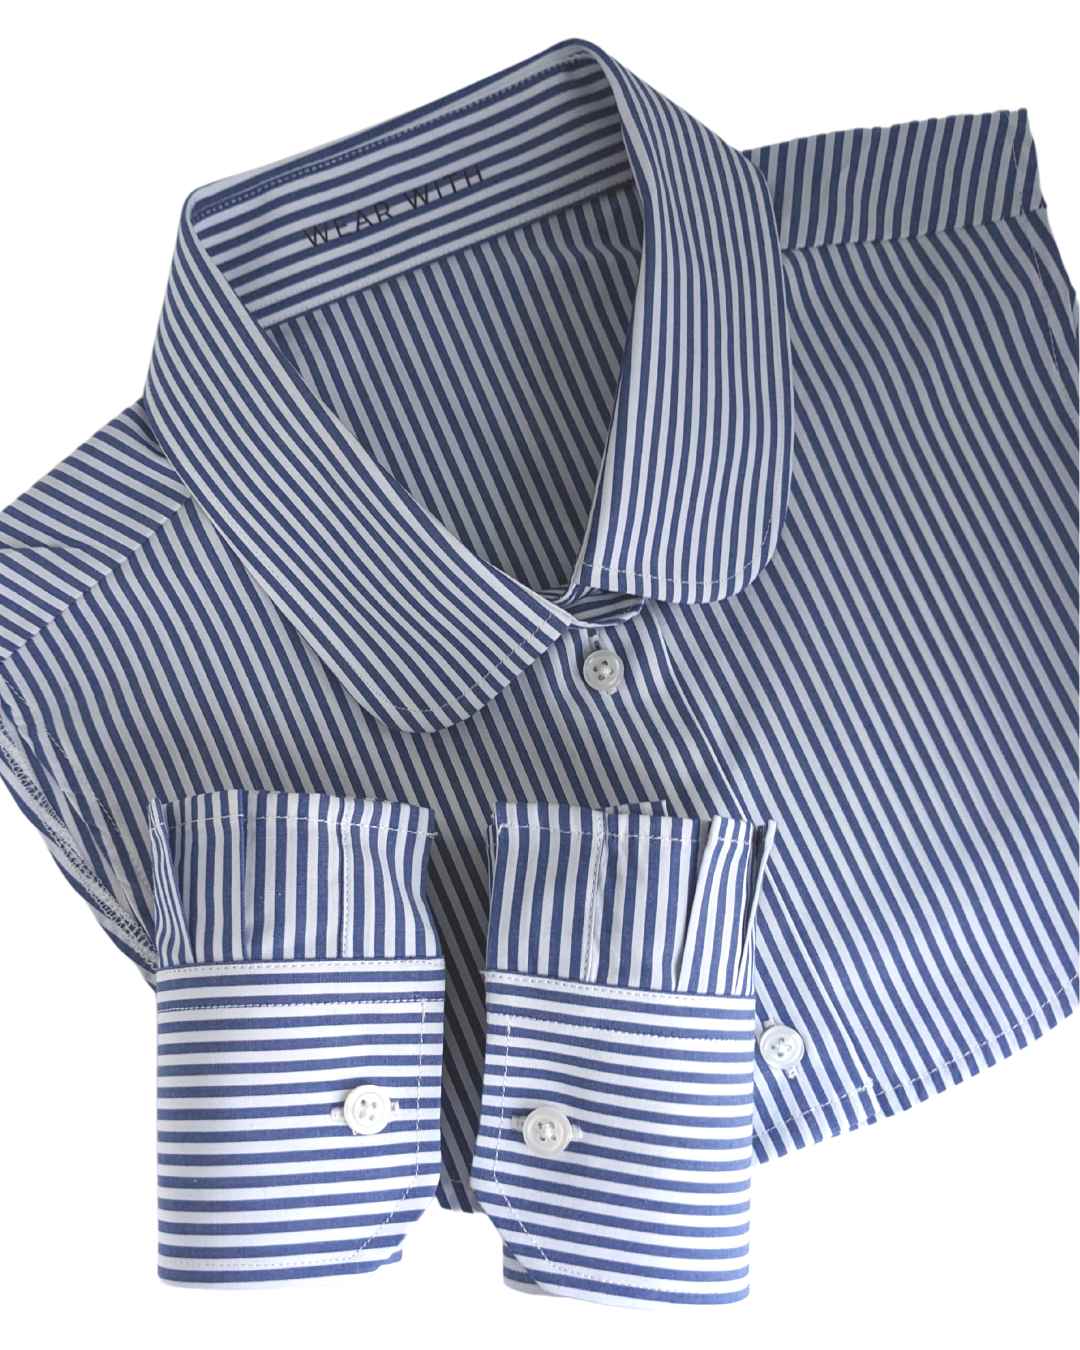 stripe shirt collar